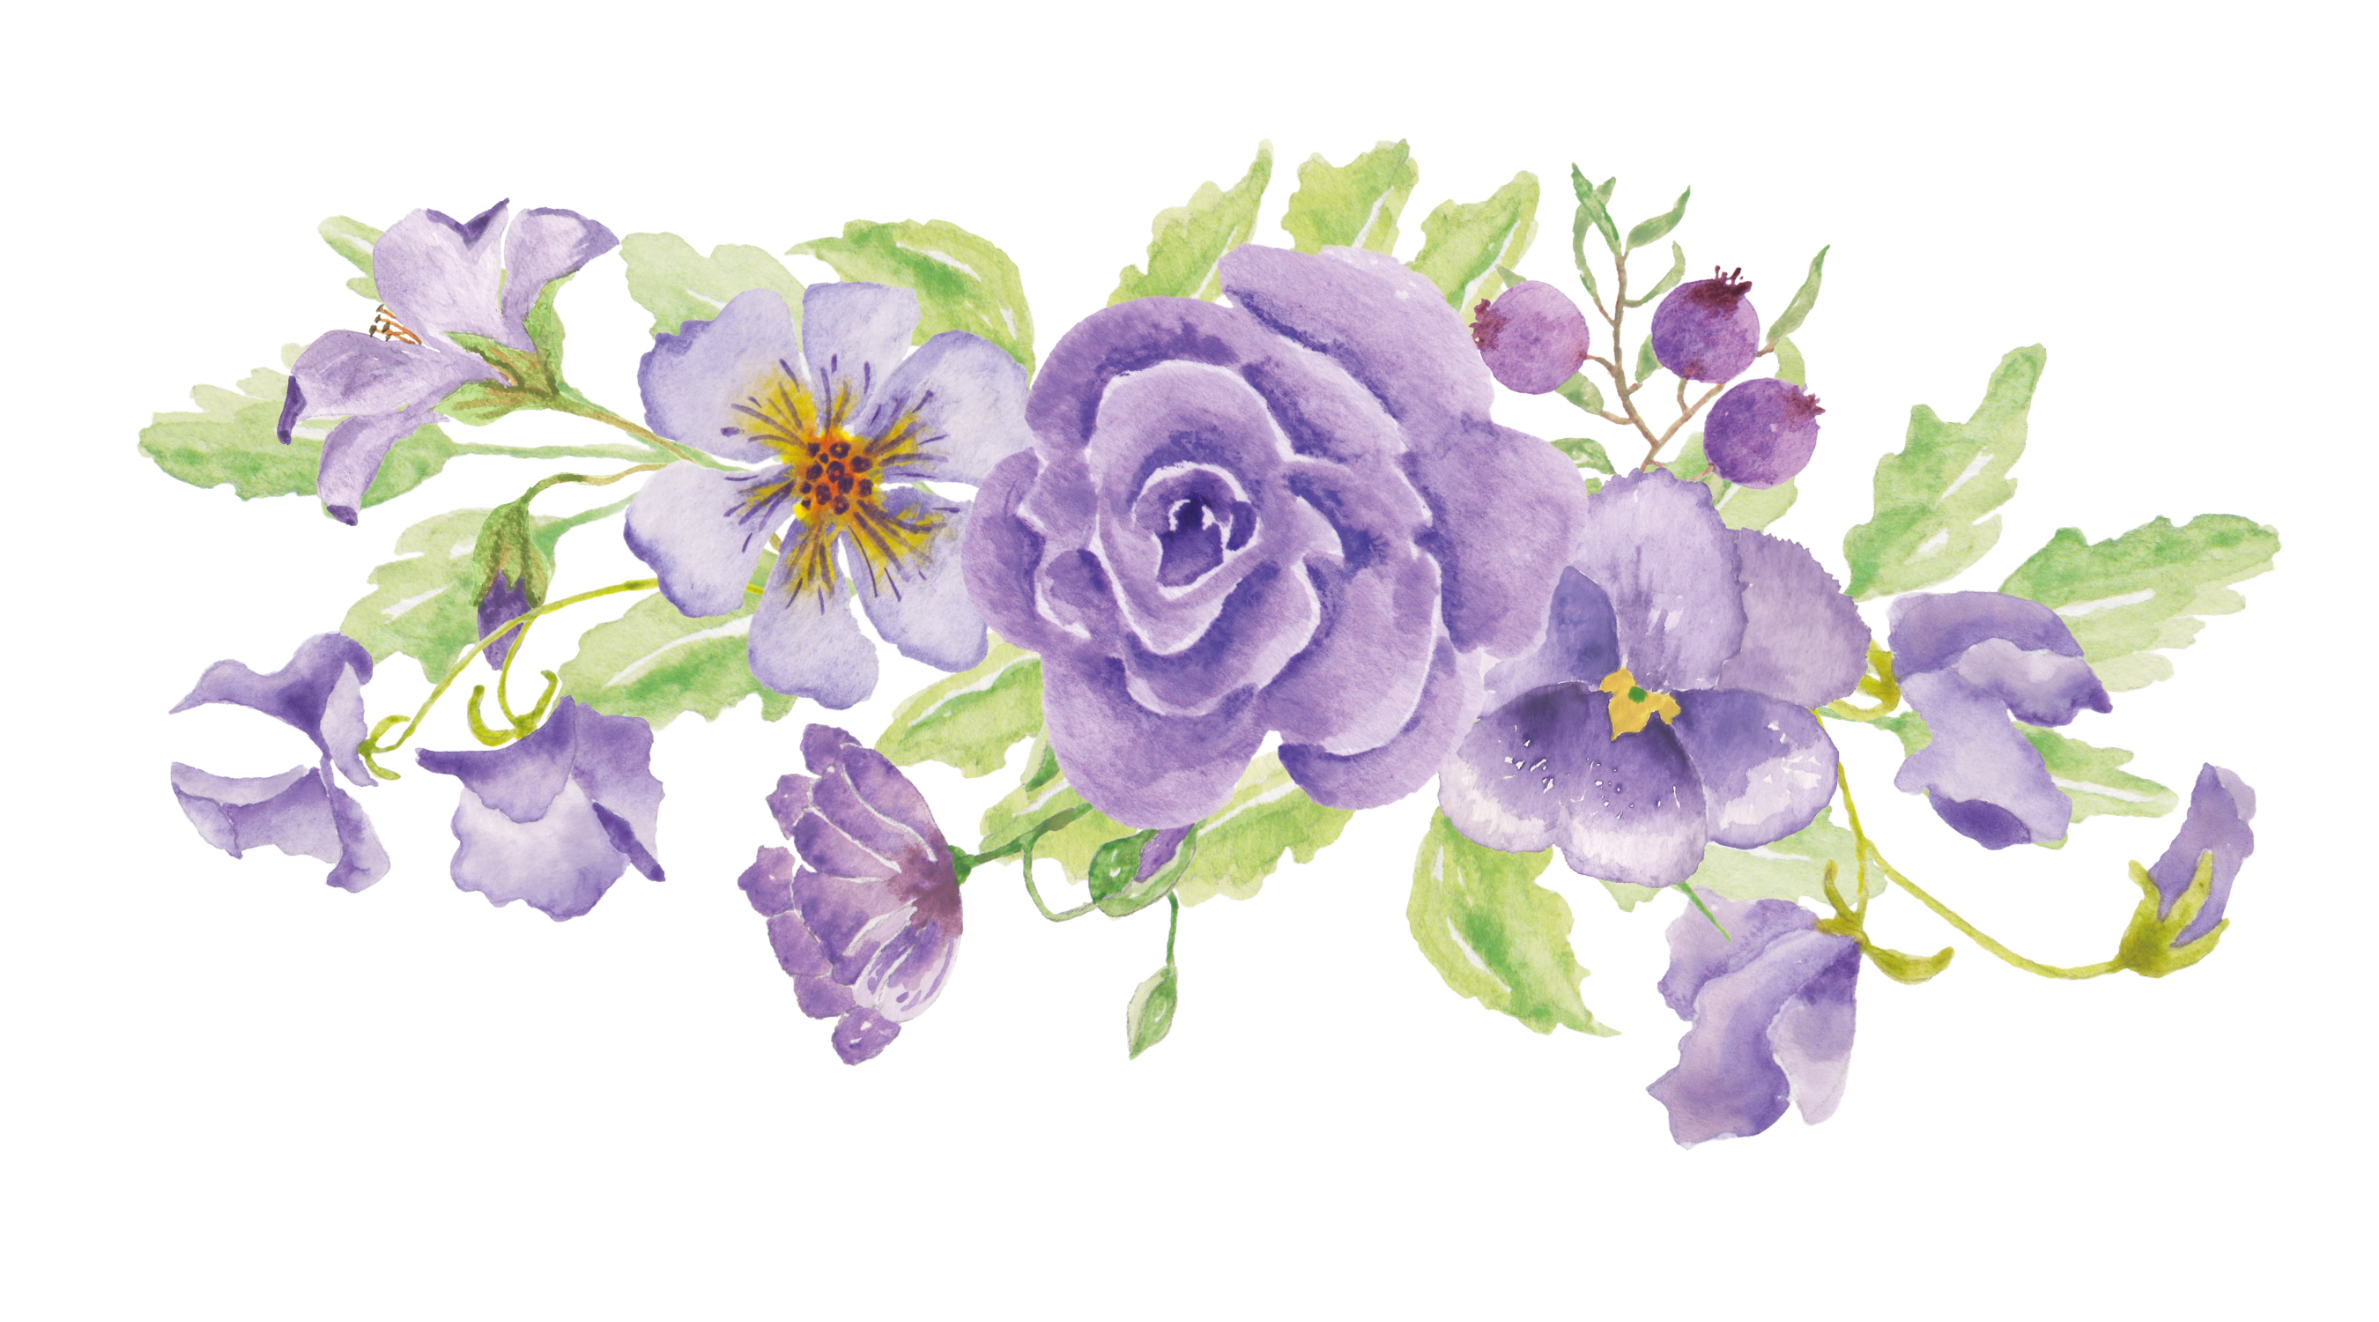 Floral design Illustration Image Portable Network Graphics - png